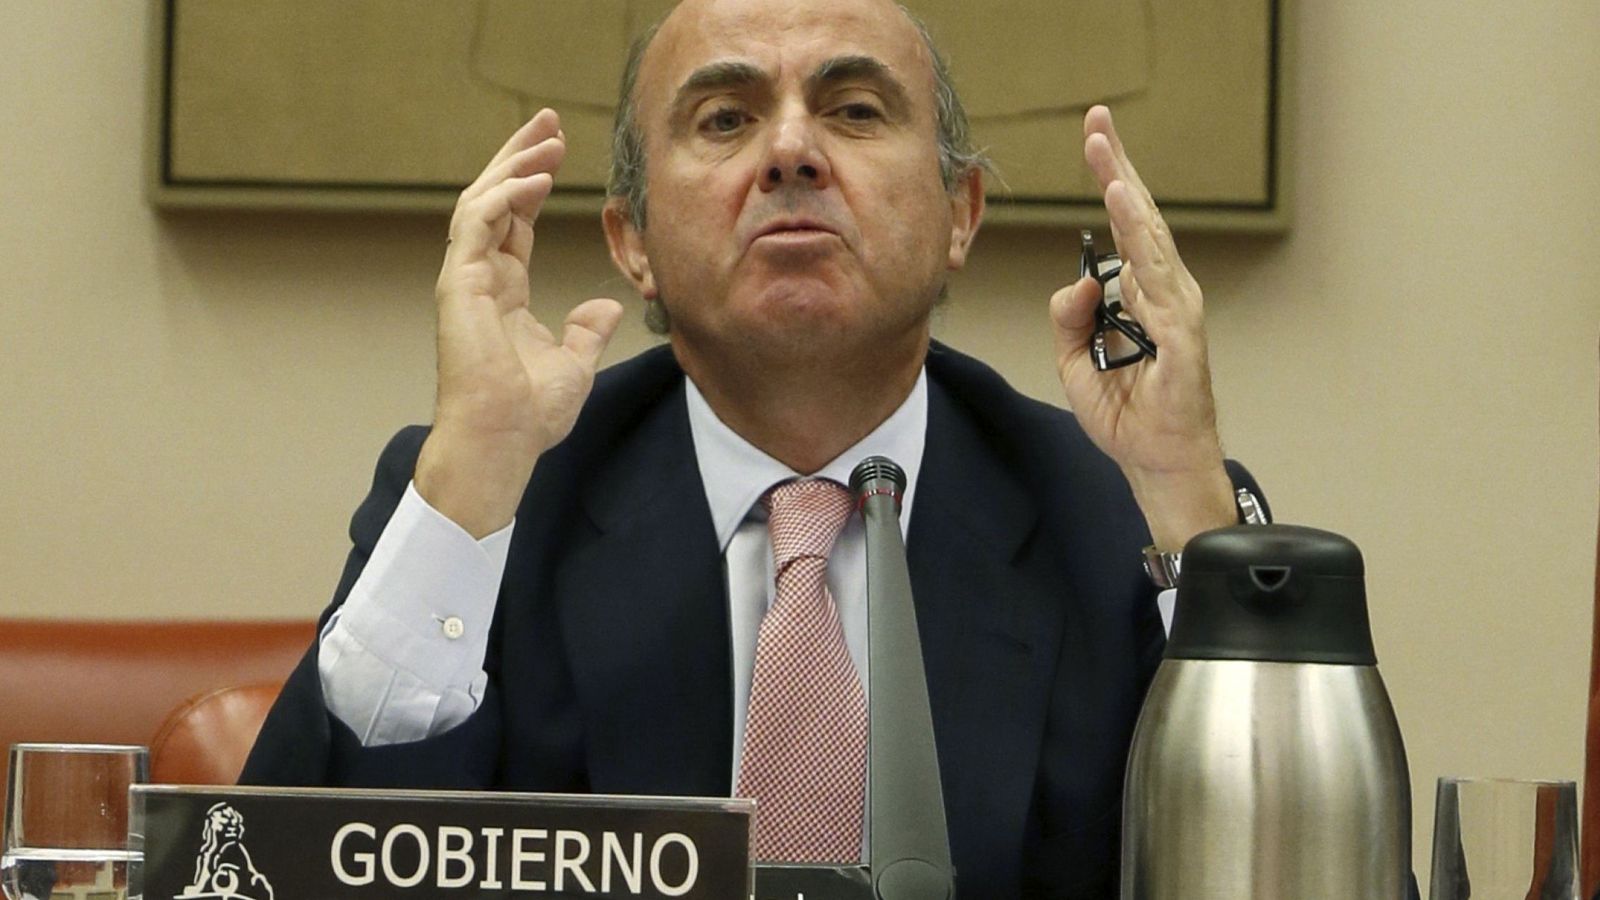 Foto: El ministro en funciones Luis de Guindos en la Comisión de Economía del Congreso de los Diputados. (EFE)